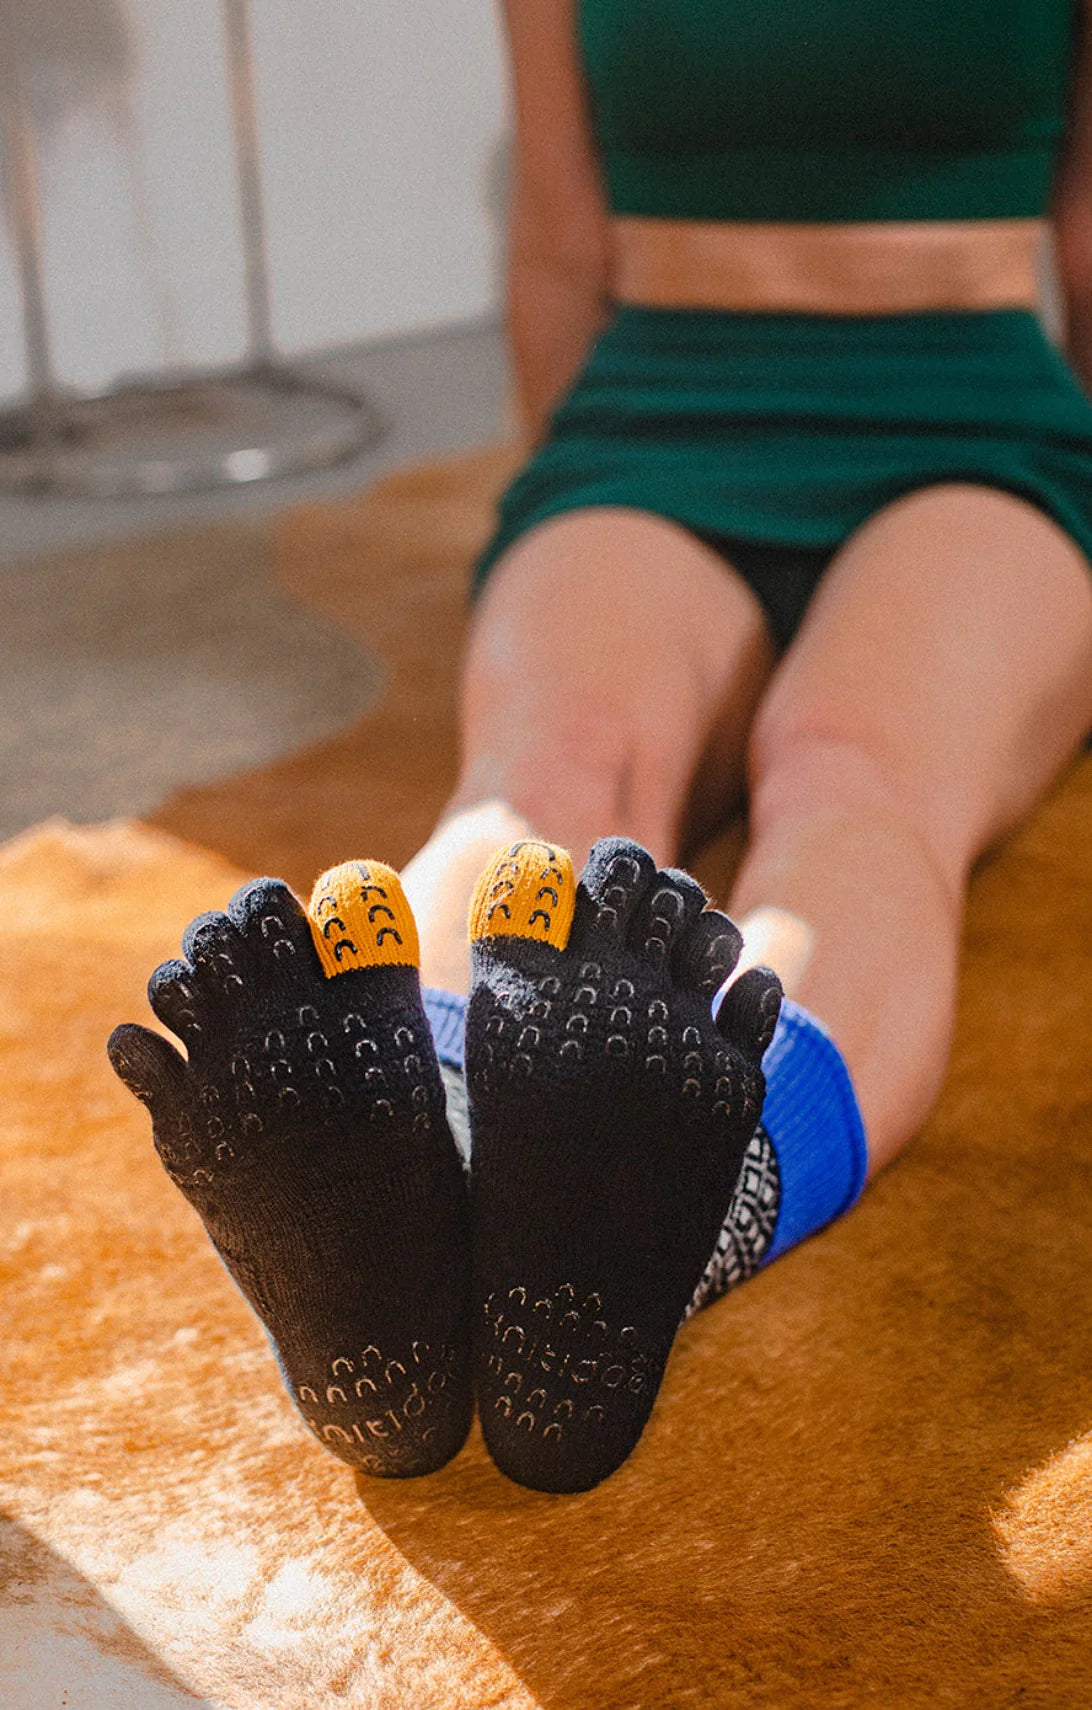 Slippers Powerlifting Sock, Cotton Pilates Socks